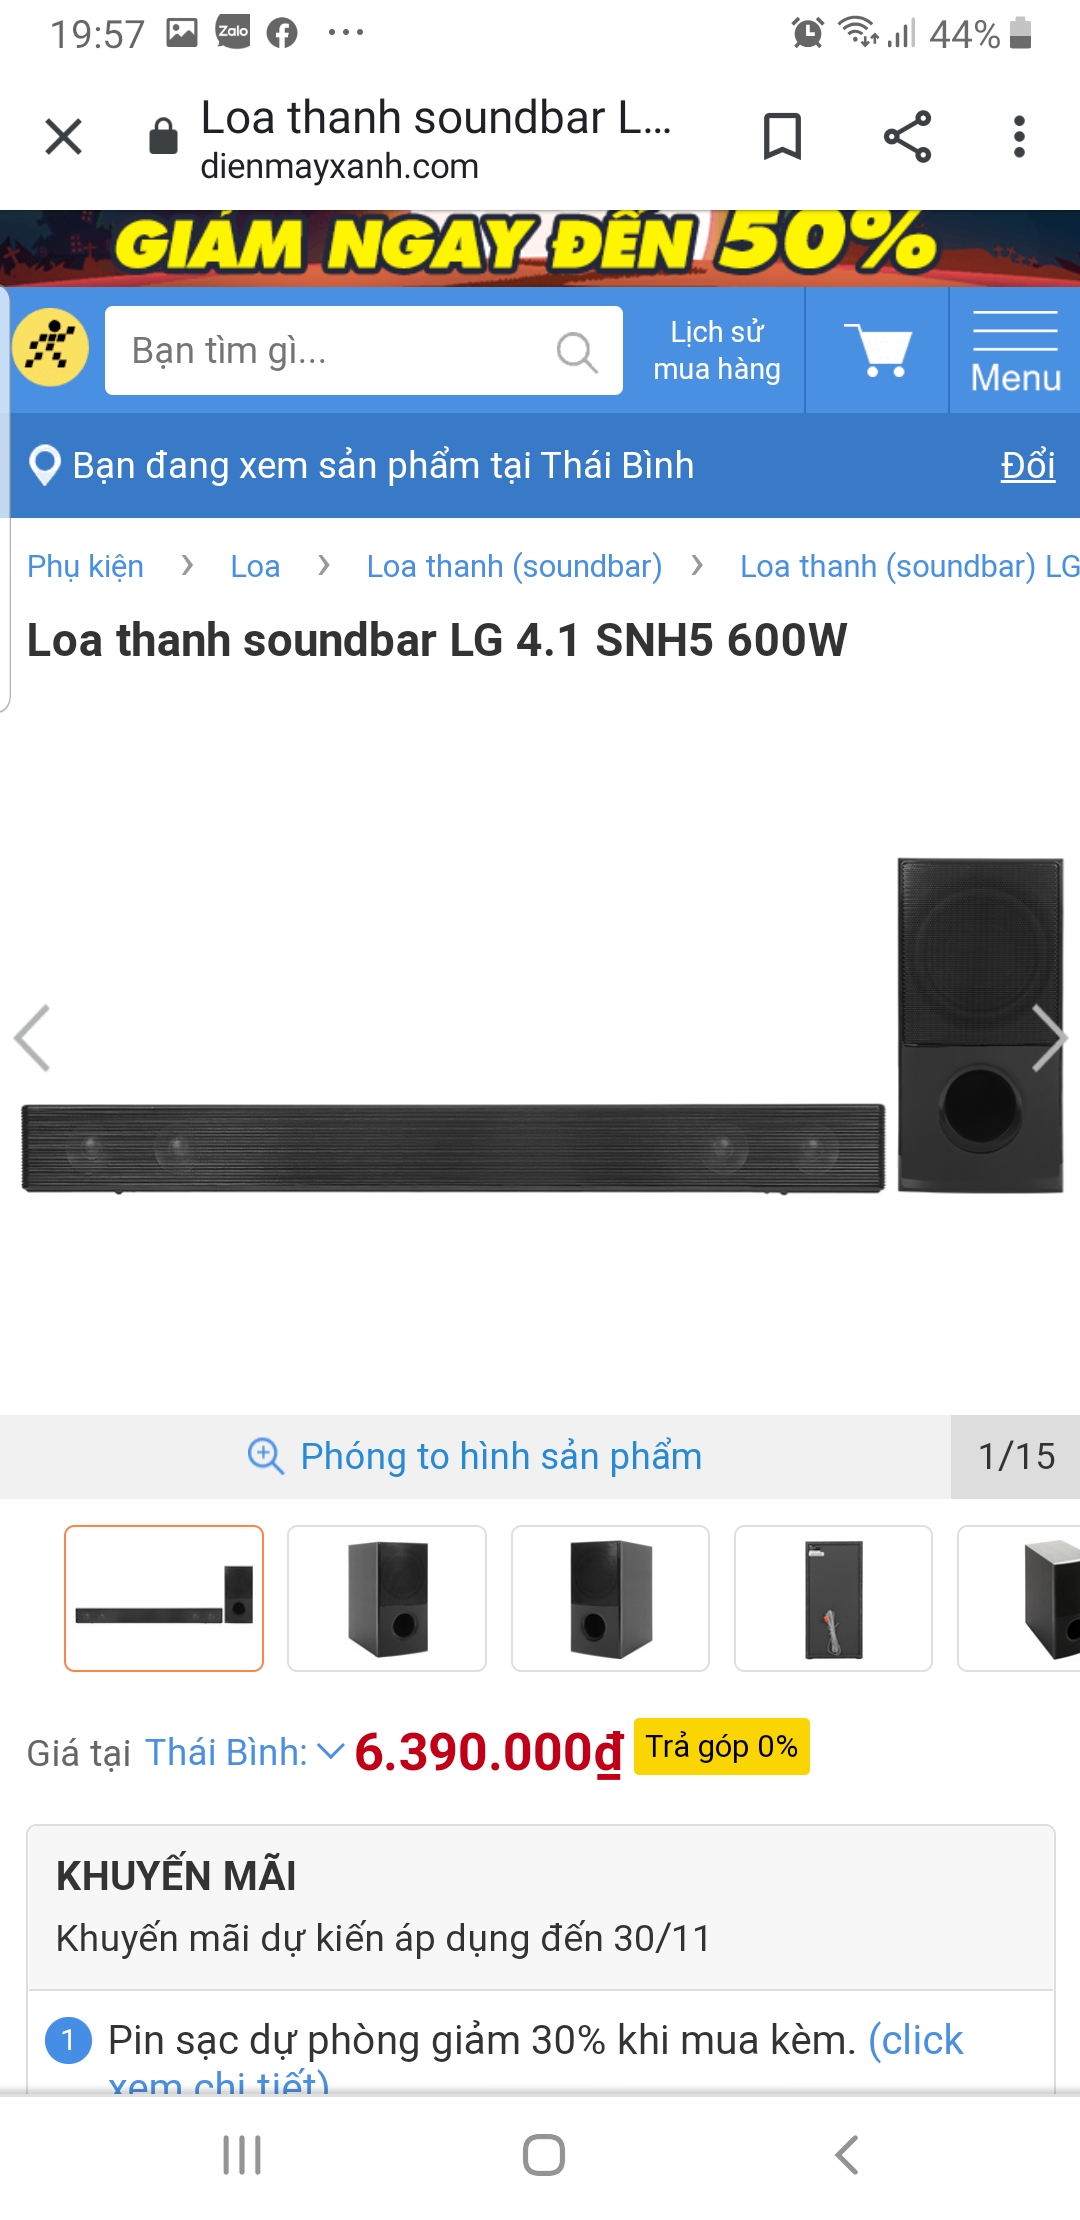 Loa thanh soundbar LG 4.1 SNH5 600W chính hãng